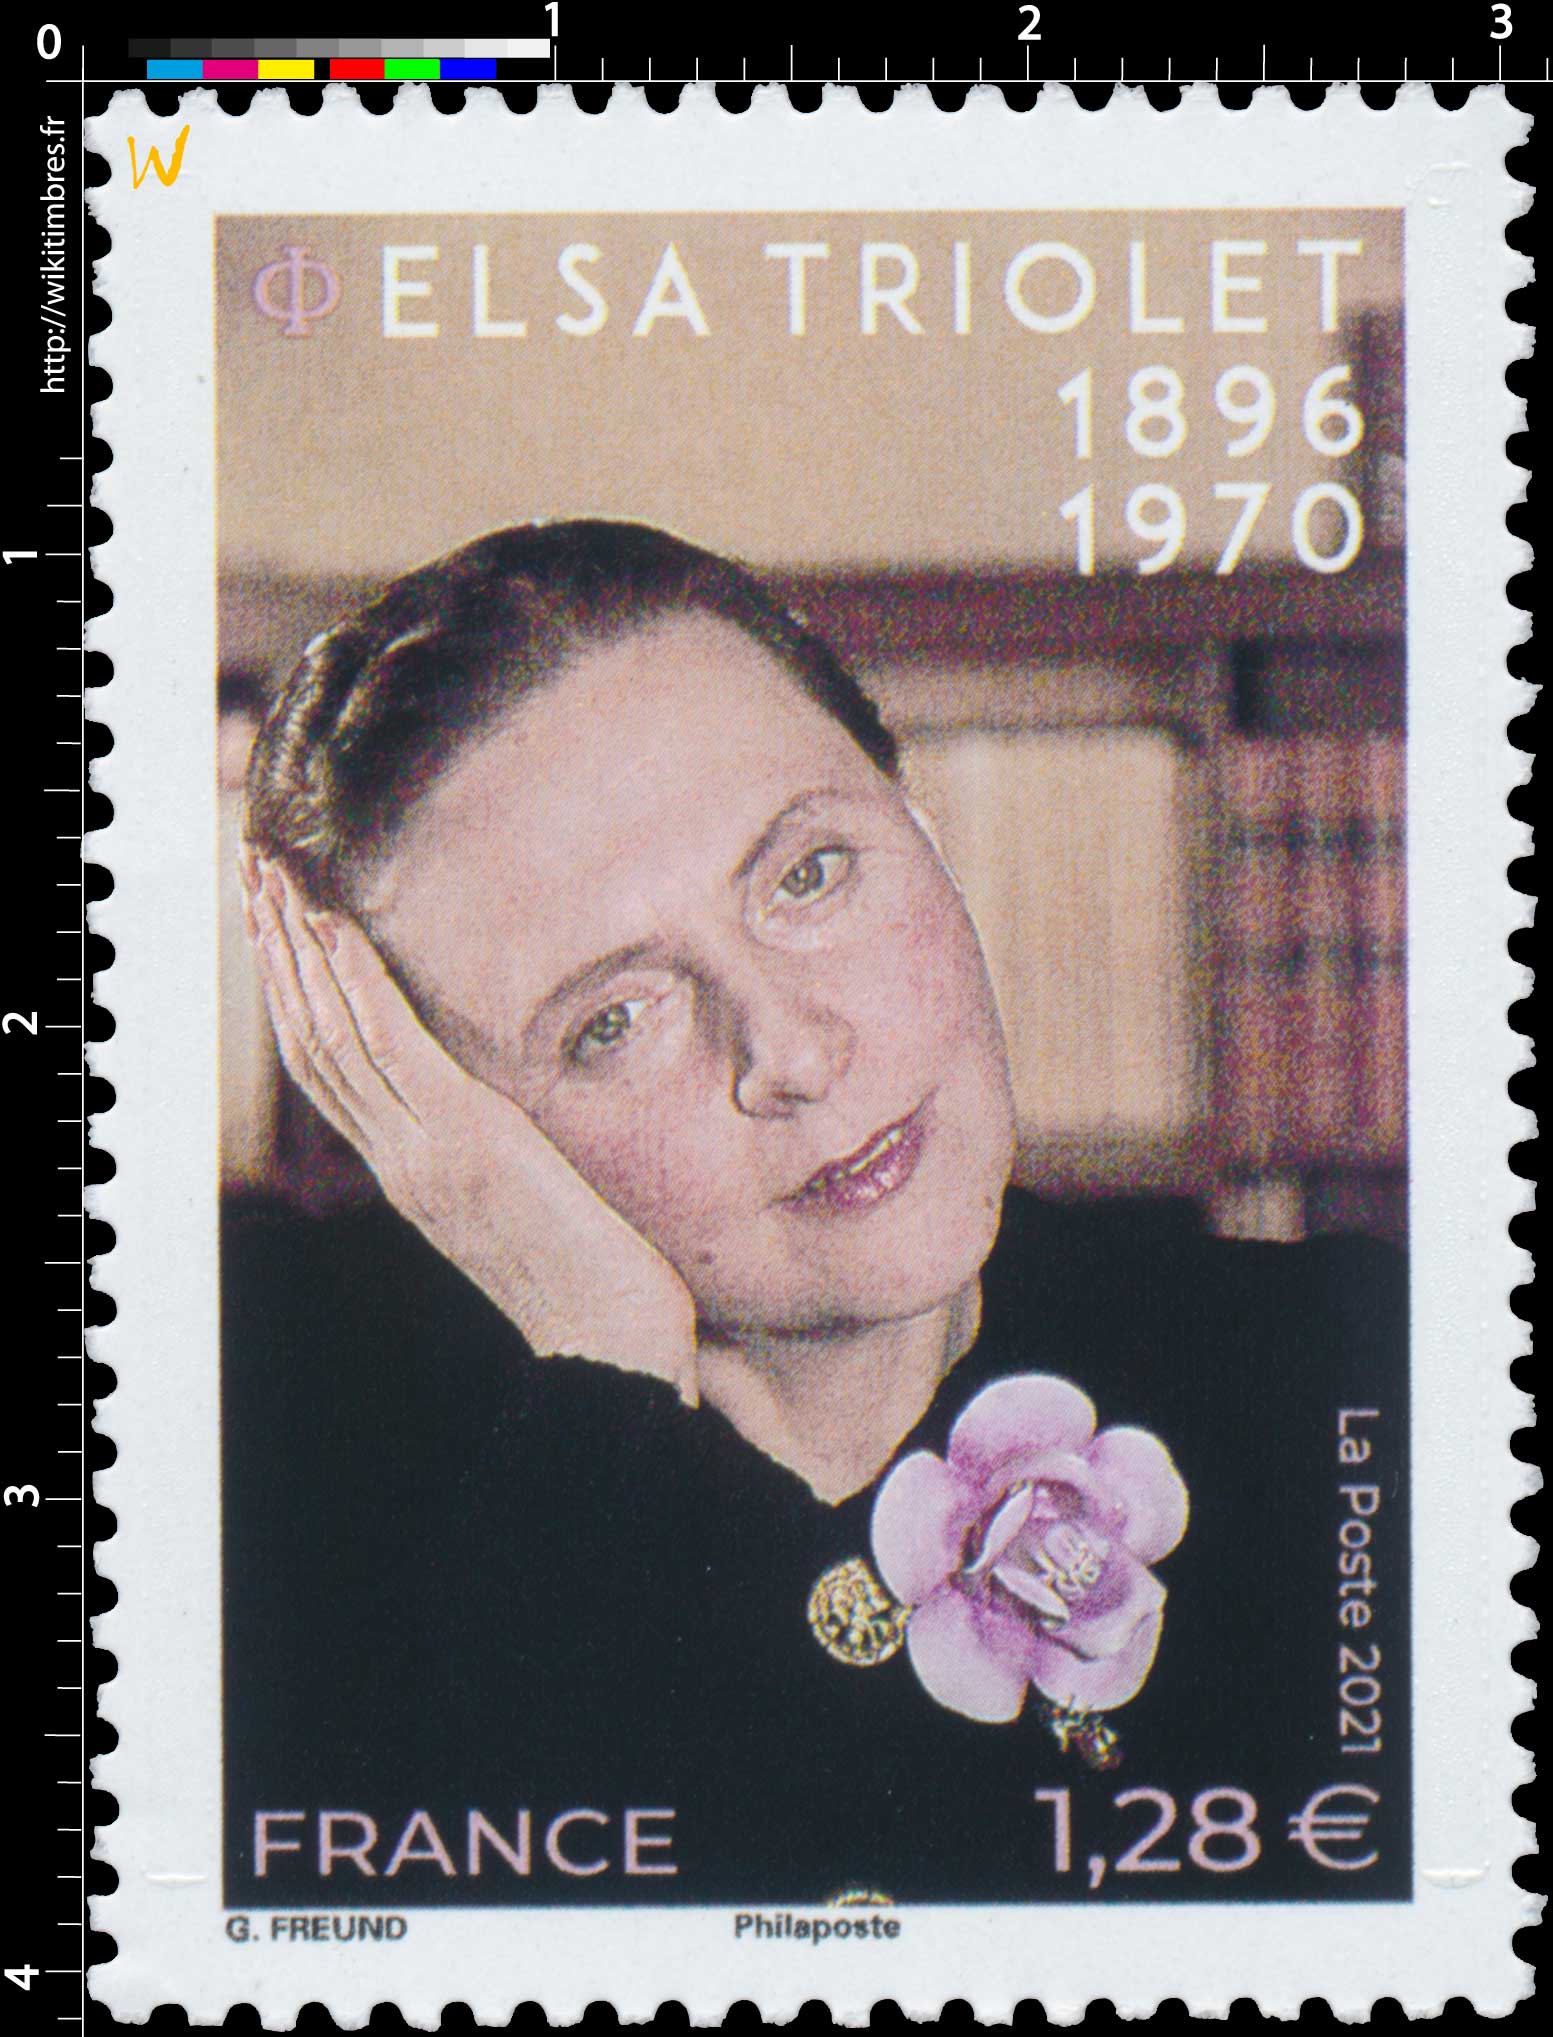 2021 ELSA TRIOLET 1896-1970